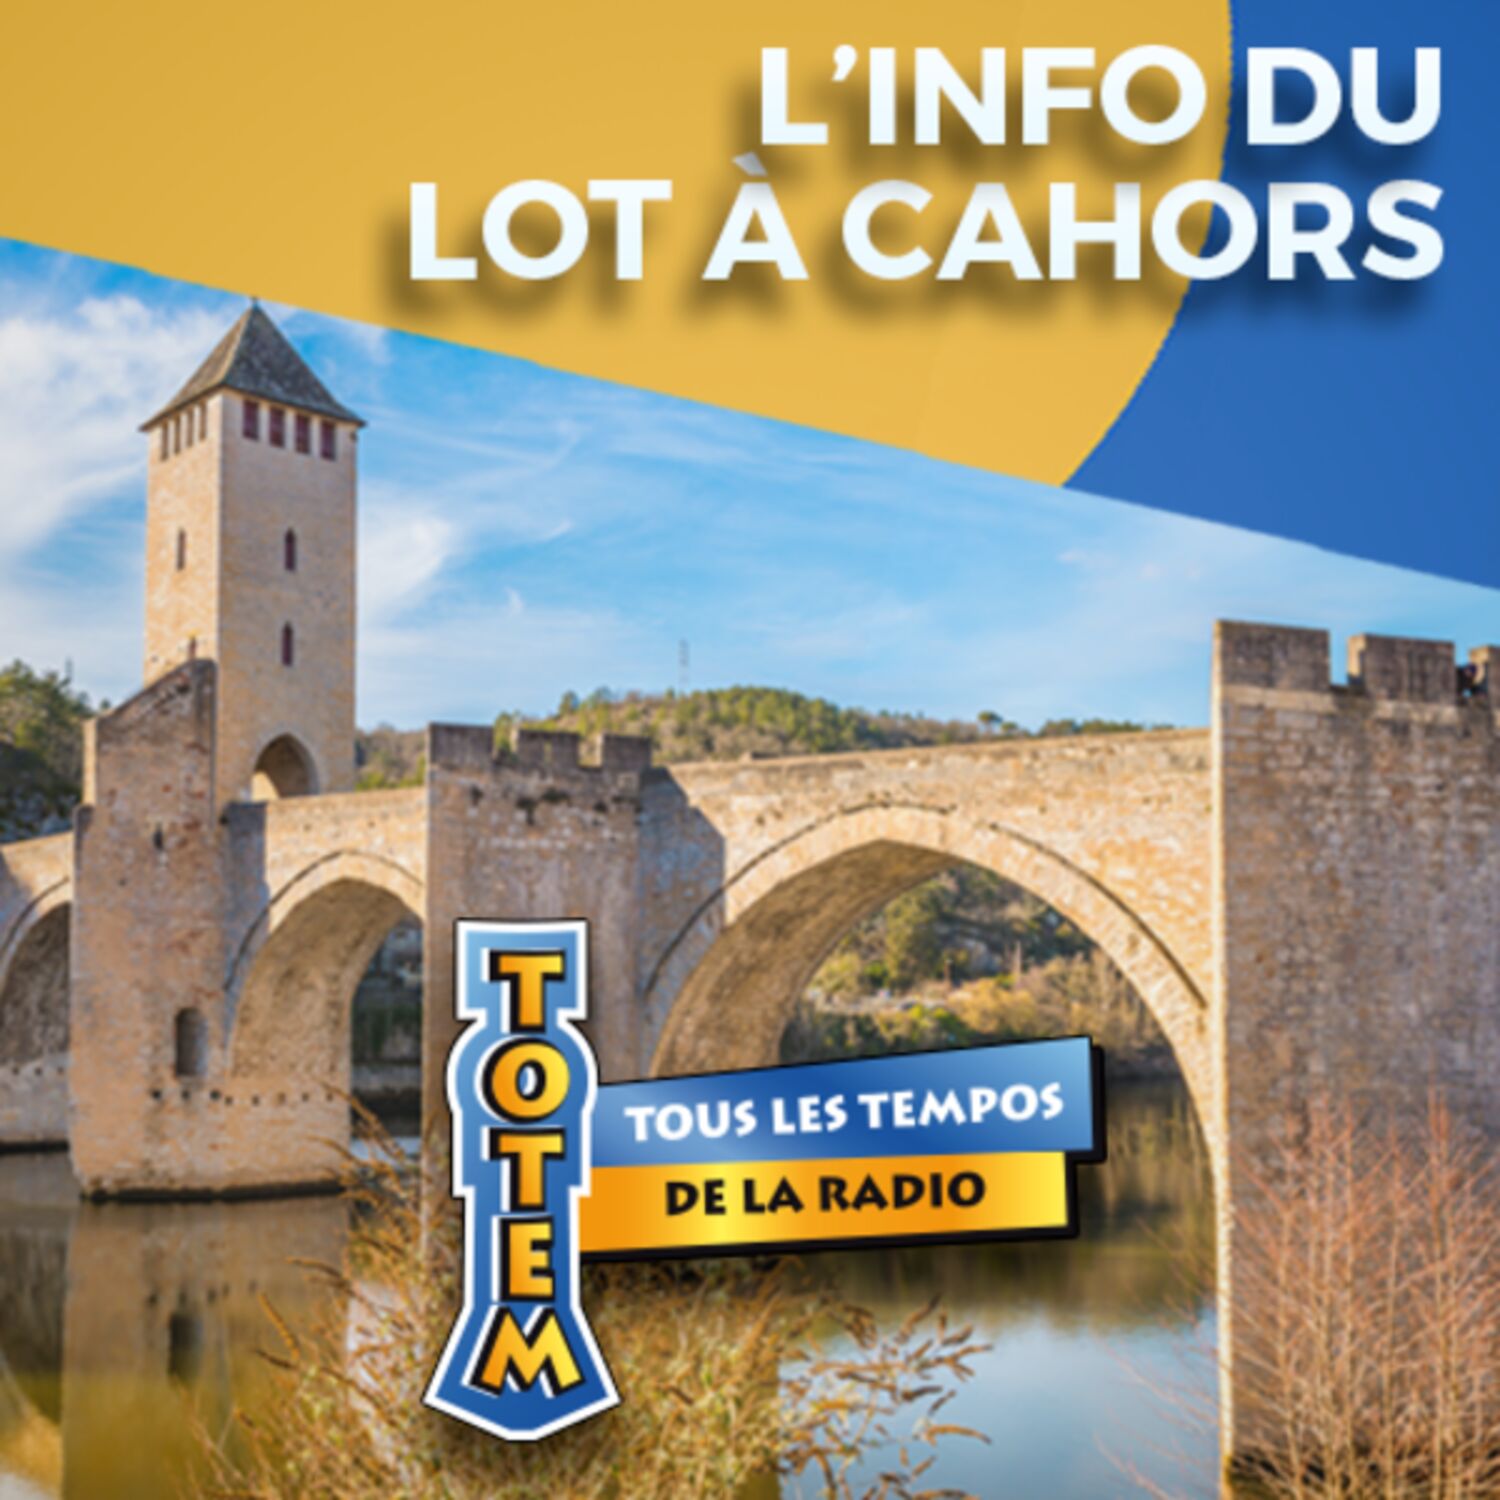 L'info du Lot à Cahors du 04/04/23 à 17h59